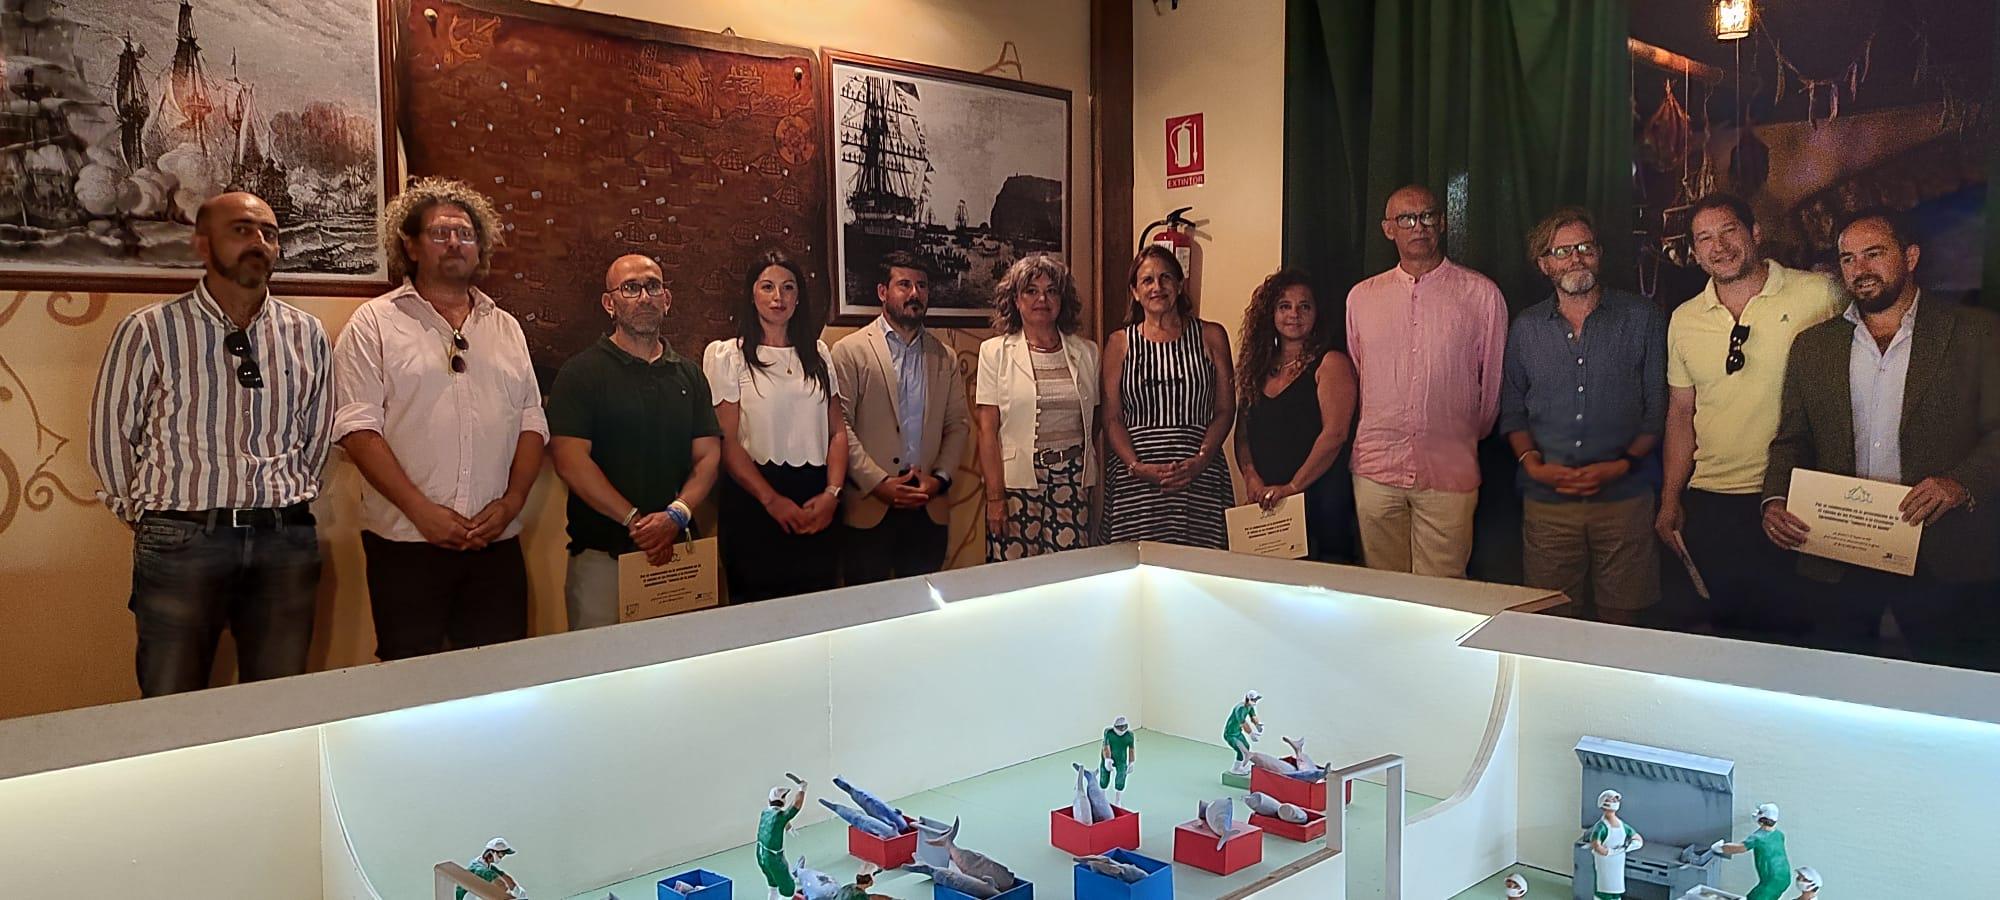 La IV edición de los premios Sabores de La Janda se presenta en el museo del atún de La Chanca en Barbate